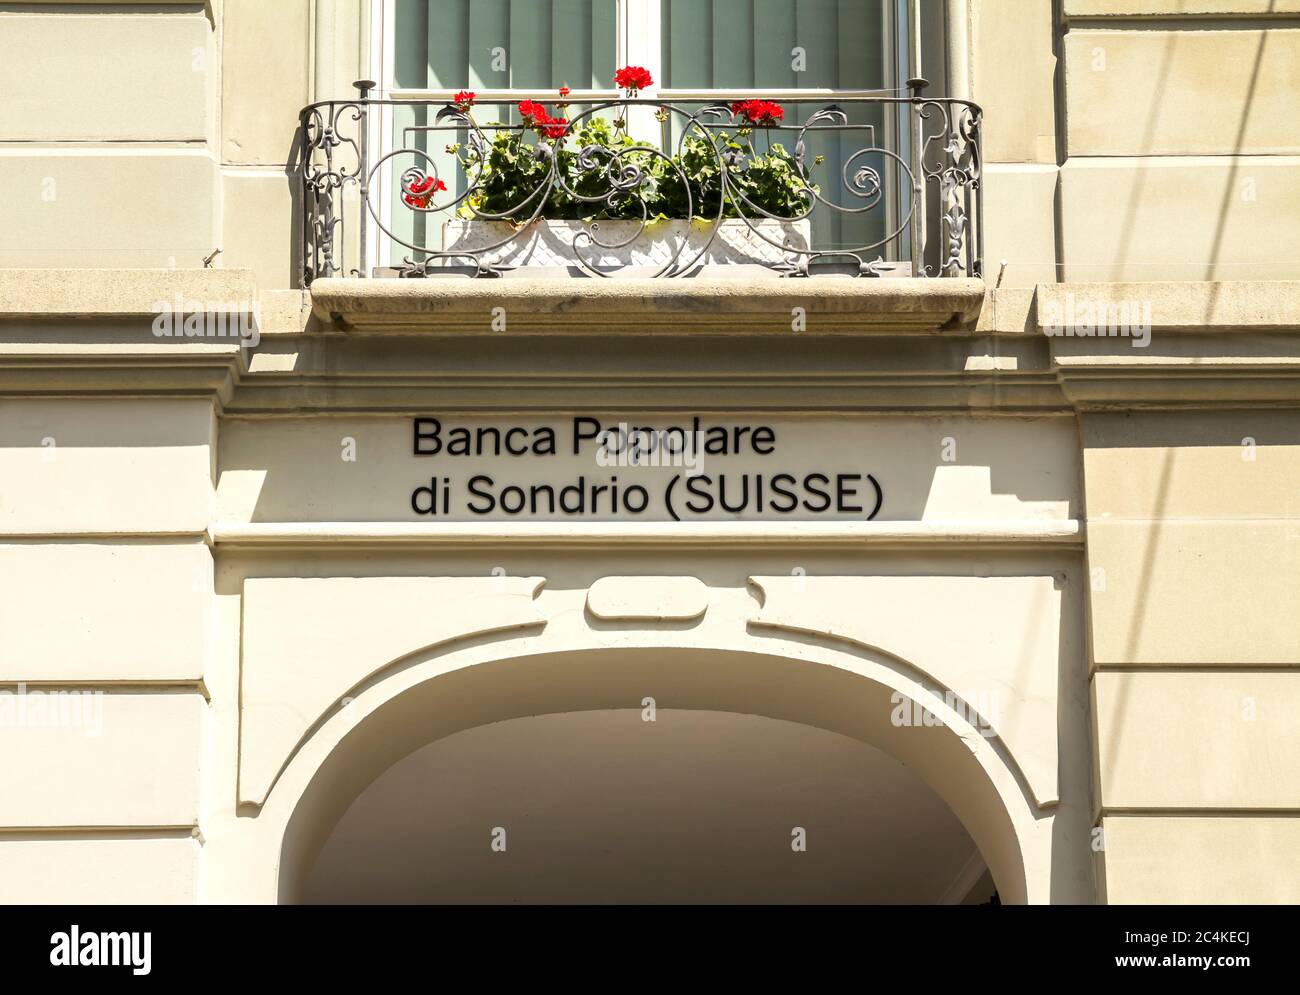 Bâle, Suisse, 1er juillet 2019 - extérieur de la succursale bancaire Banca  Popolare di Sondrio. Banca Popolare di Sondrio S.C.p.A. BPS Suisse est une  banque italienne Photo Stock - Alamy